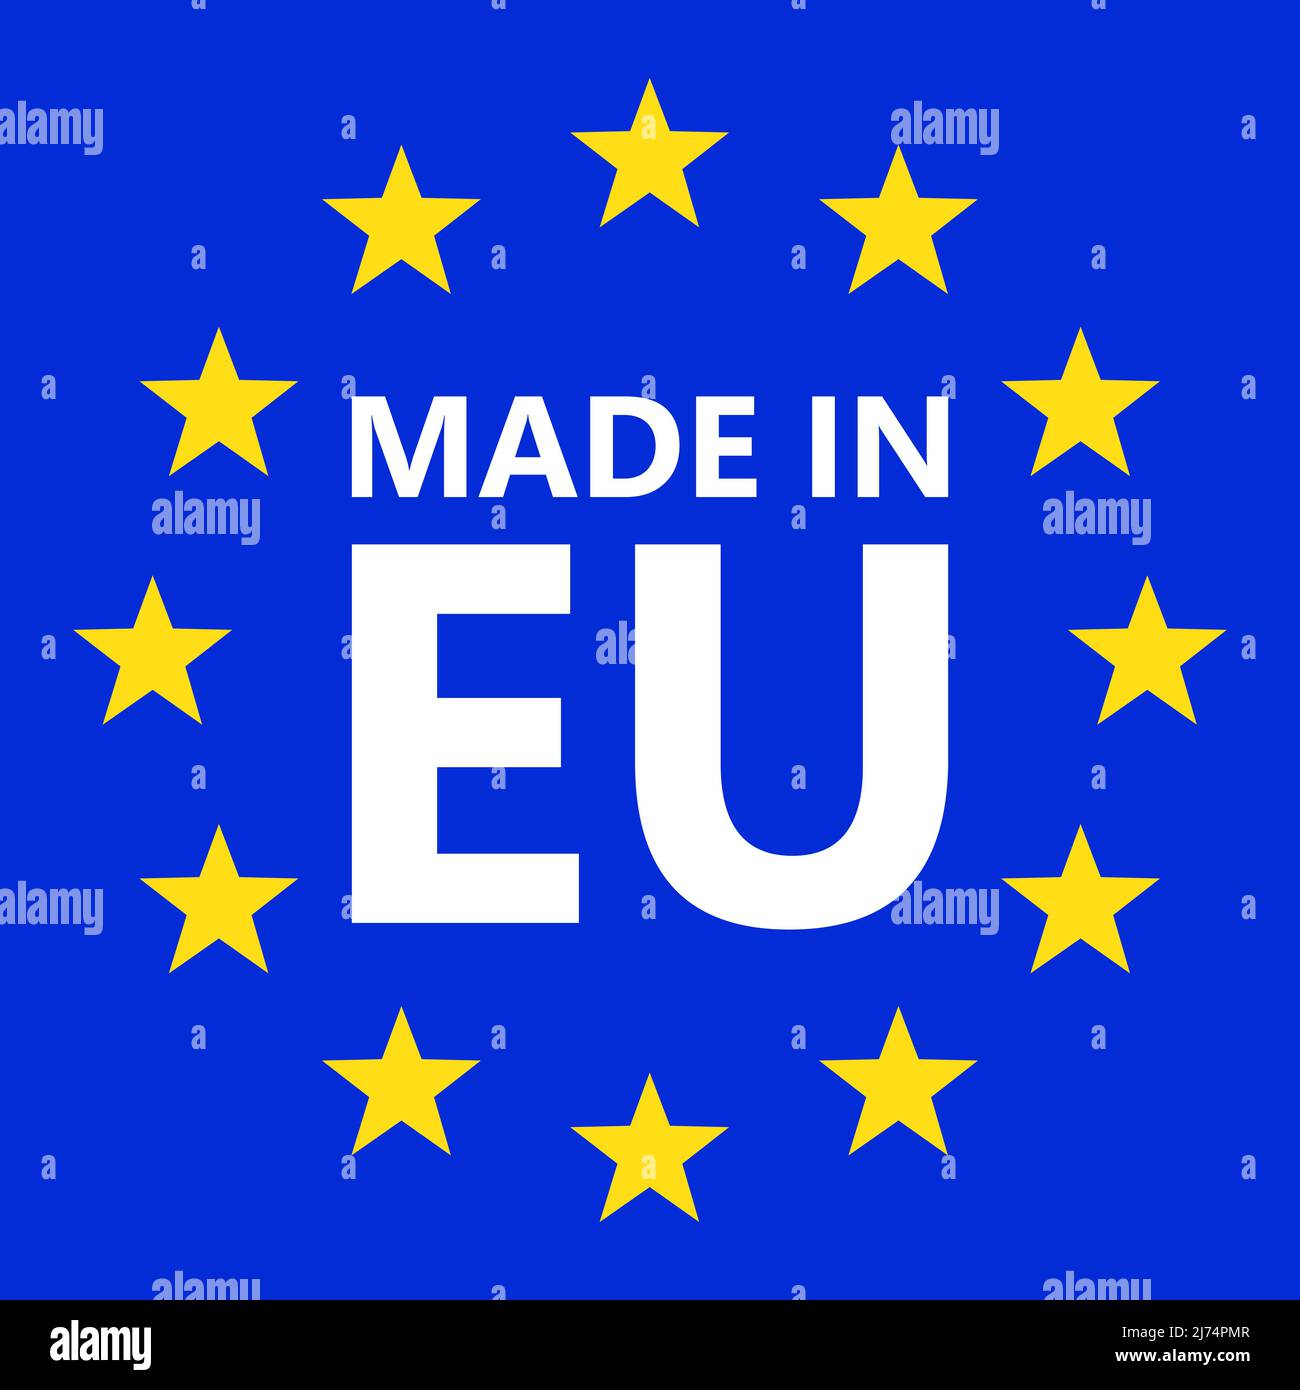 Made in EU. European union logo. Vector illustration. EU flag icon with stars. Stock Vector